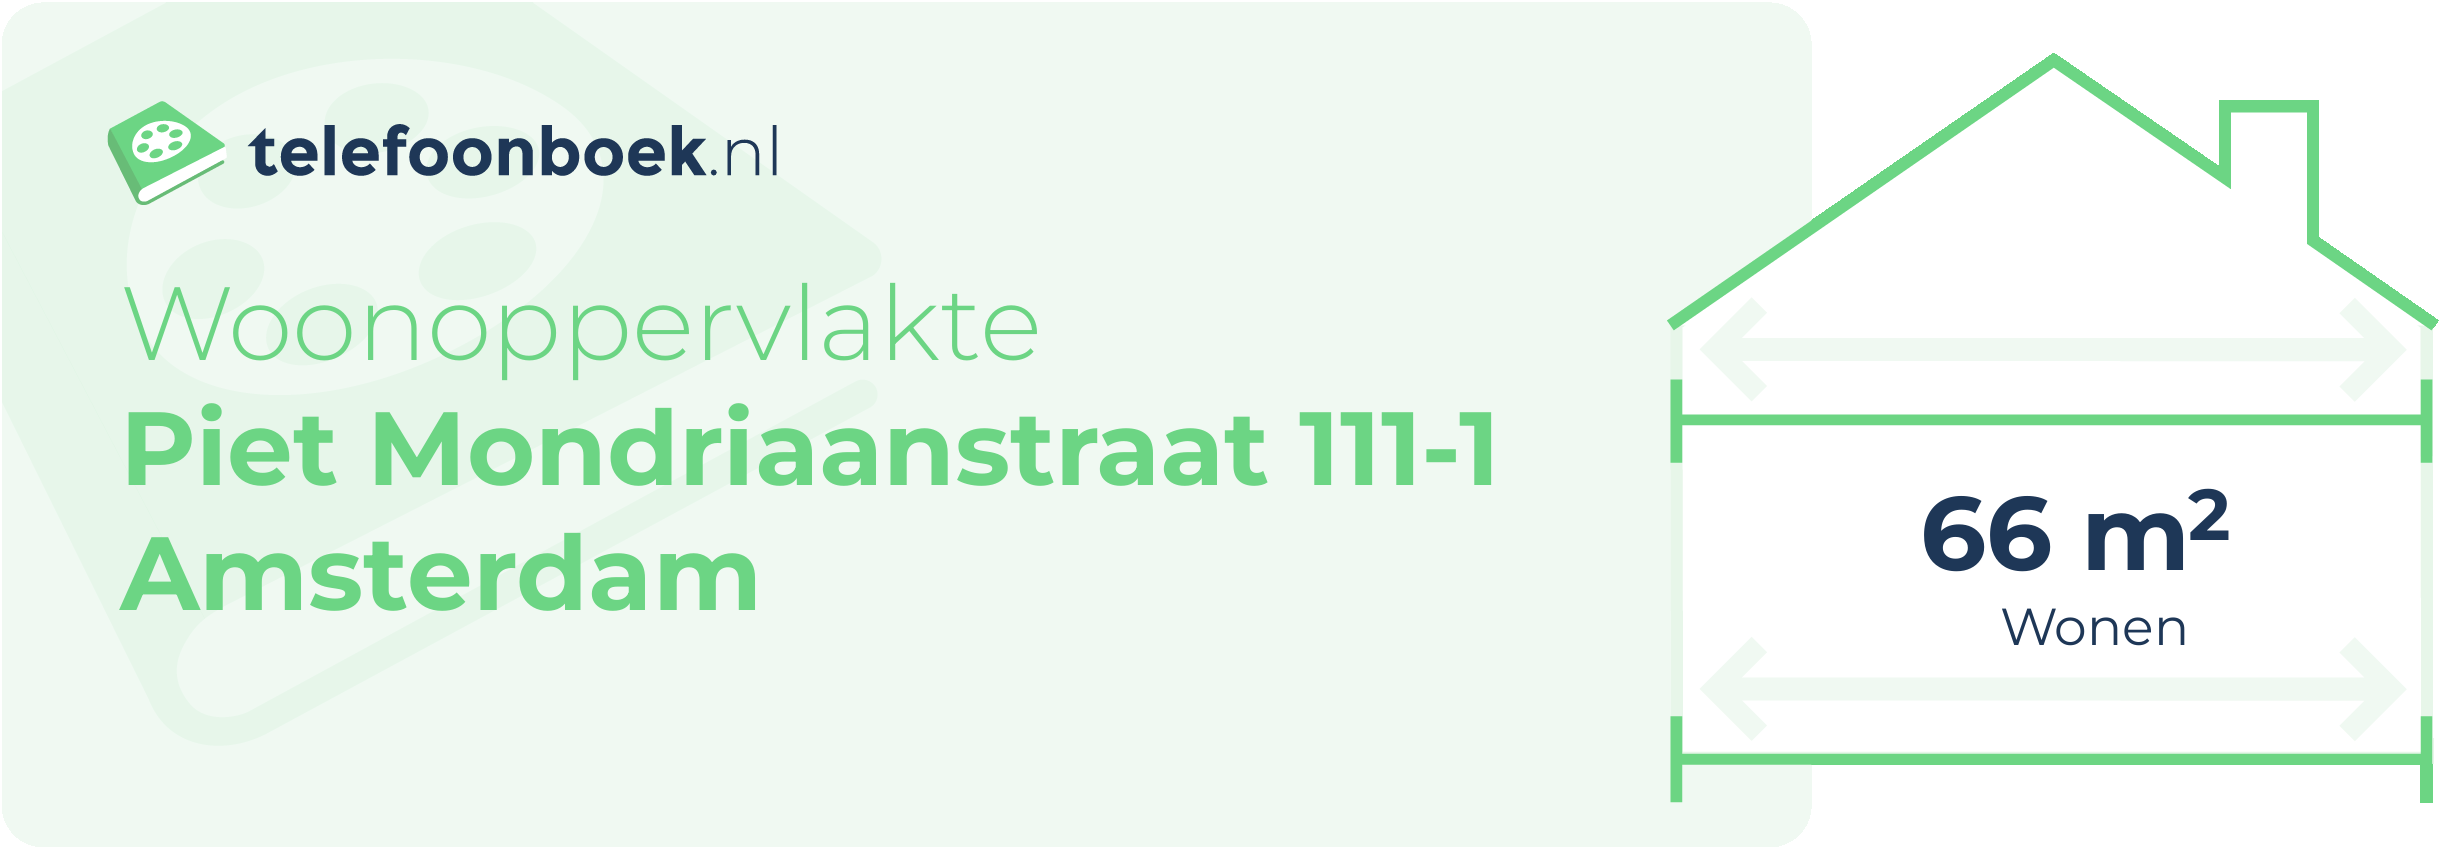 Woonoppervlakte Piet Mondriaanstraat 111-1 Amsterdam